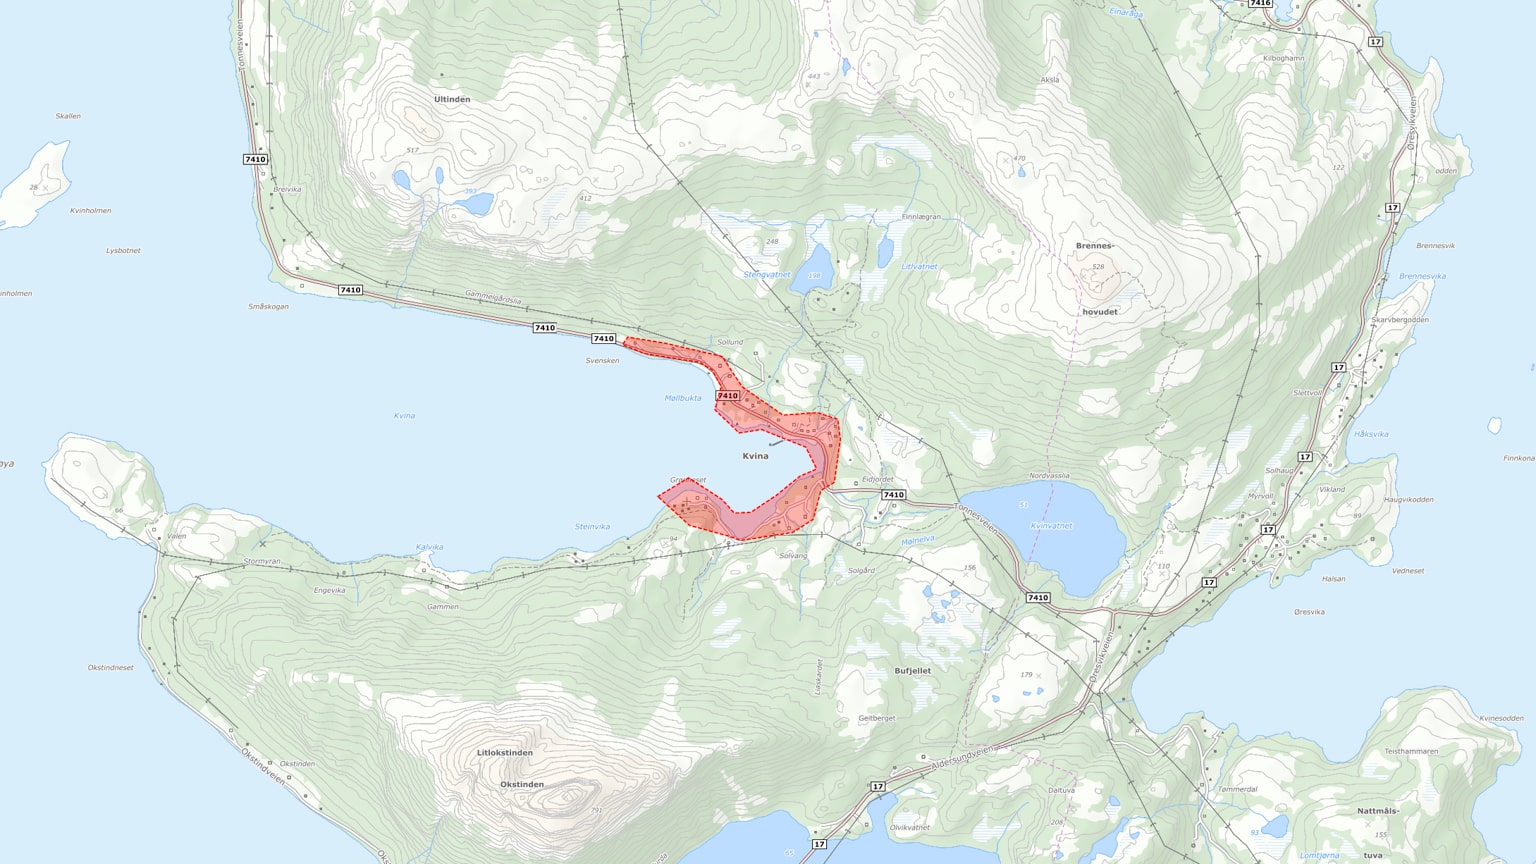 Kartutsnitt over prosjektområdet Kvina, Lurøy kommune